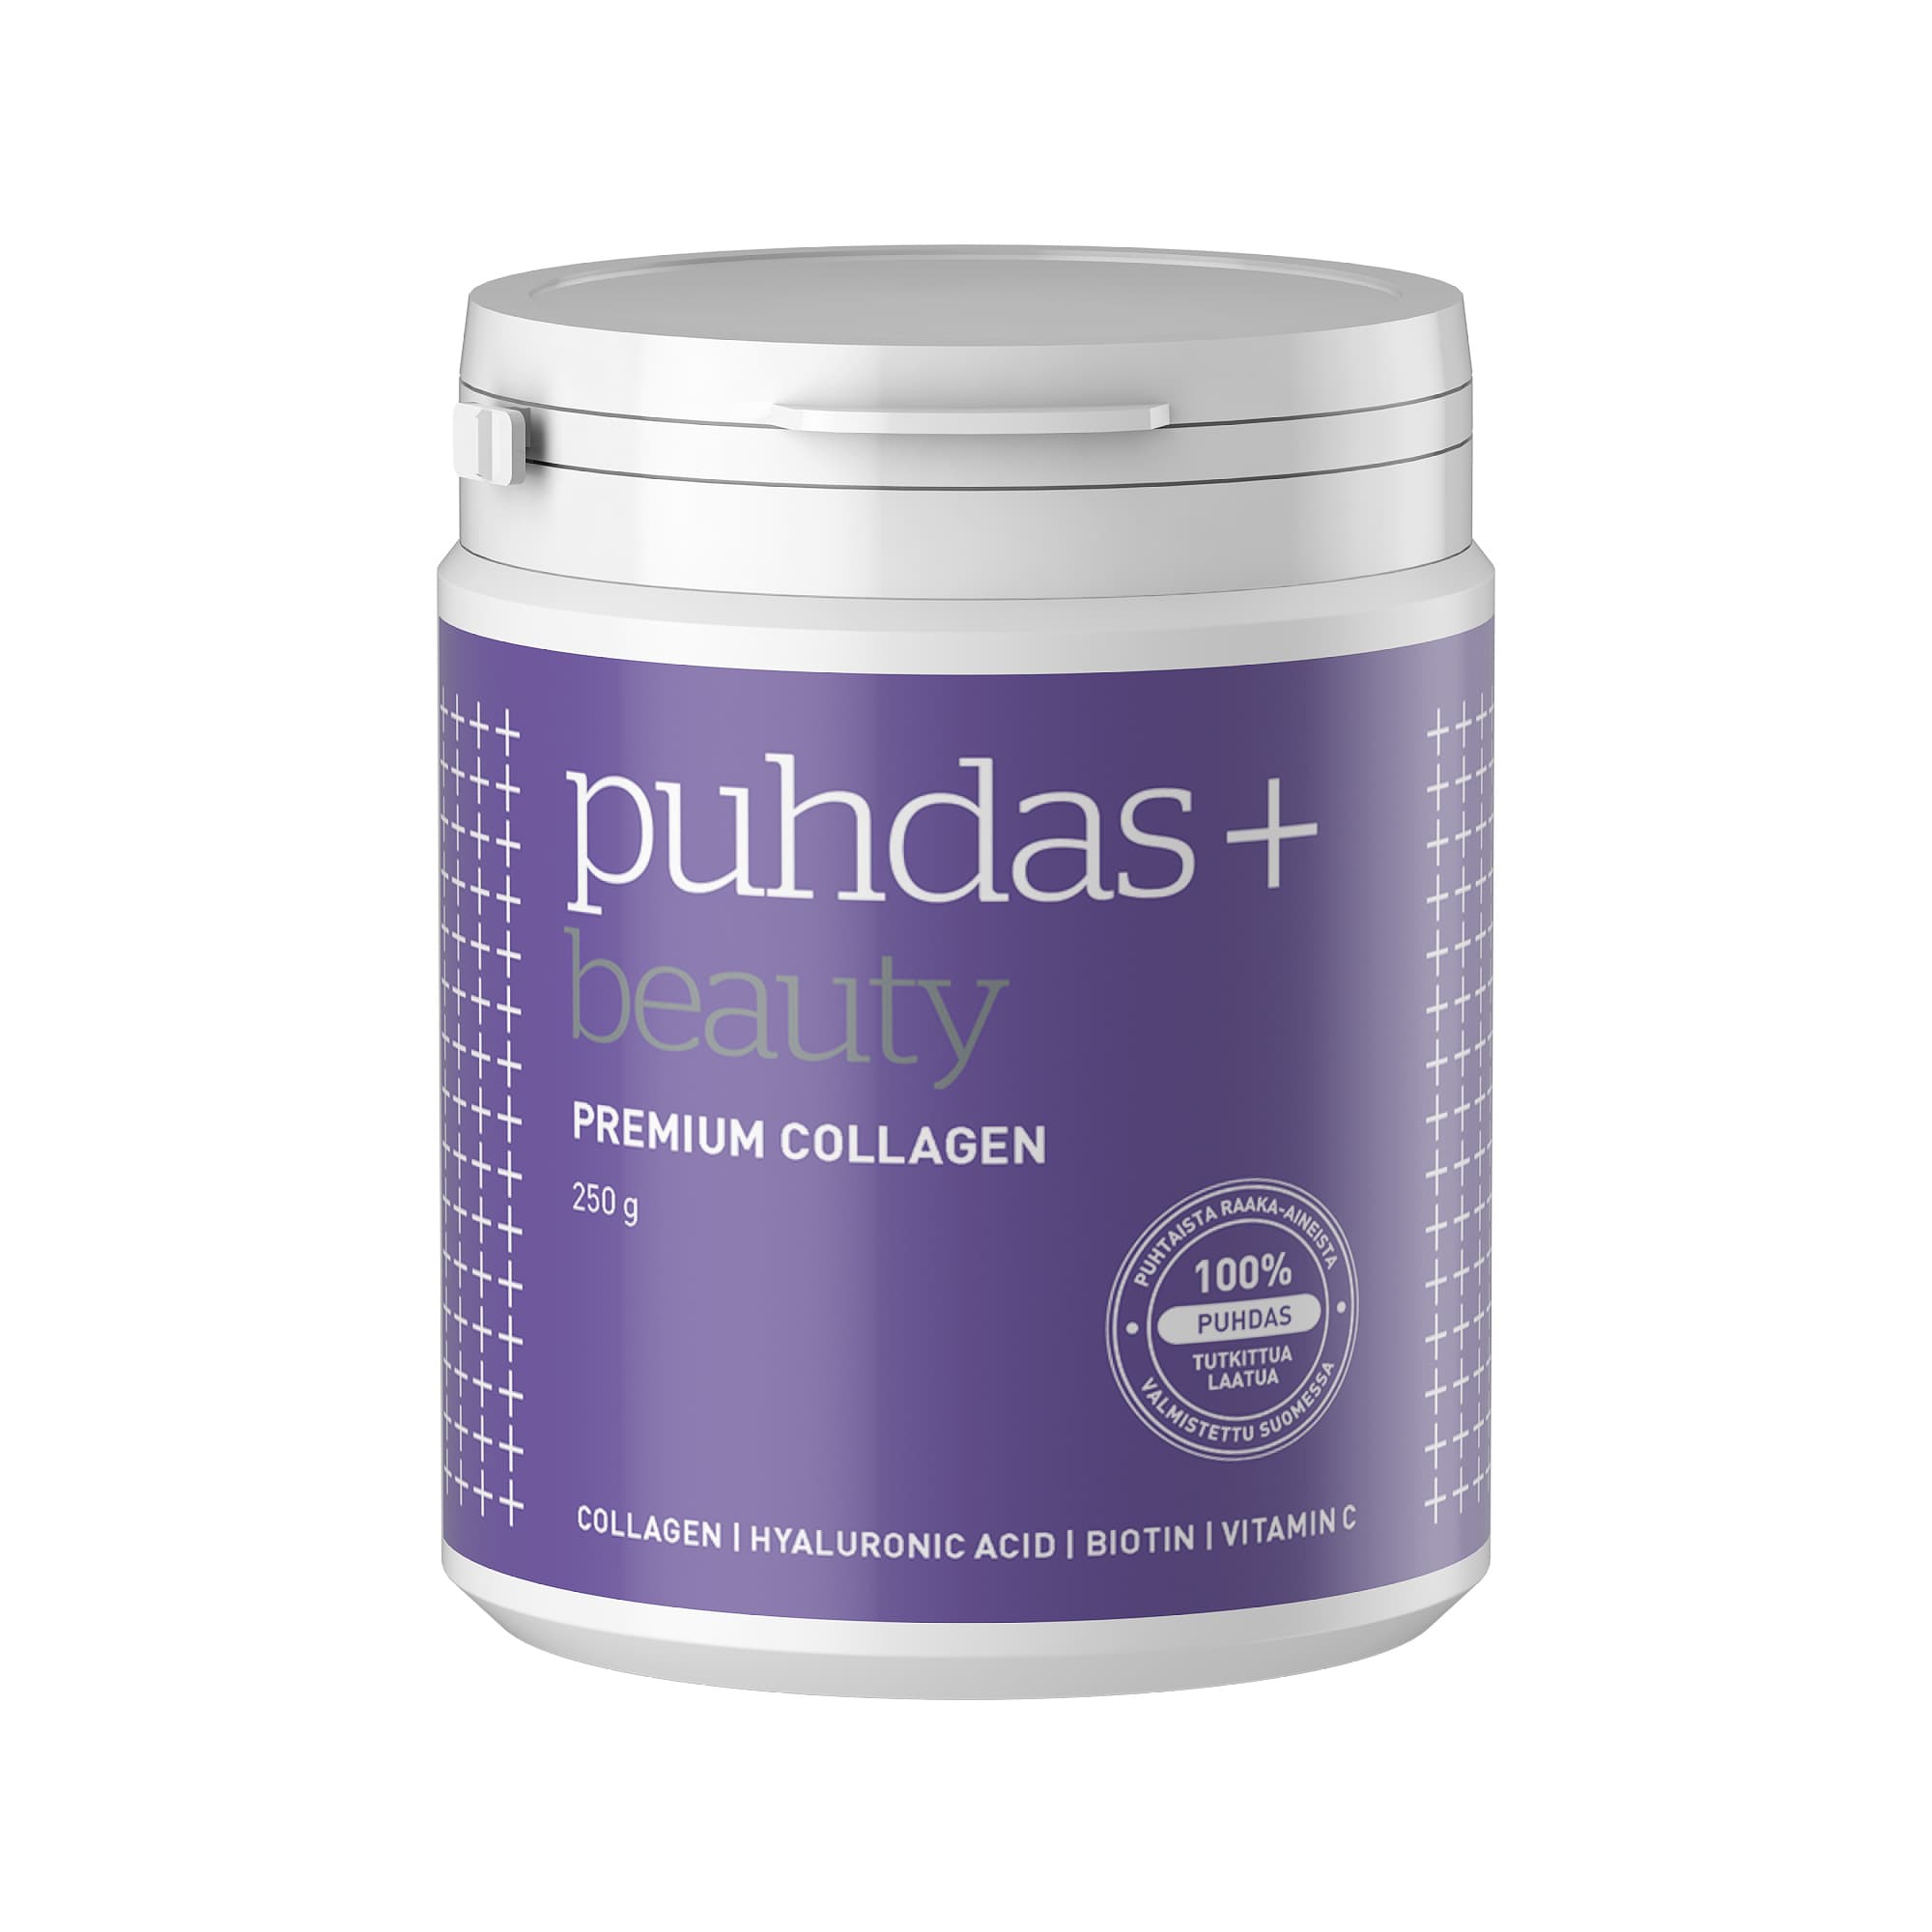 Puhdas+ Premium Collagen